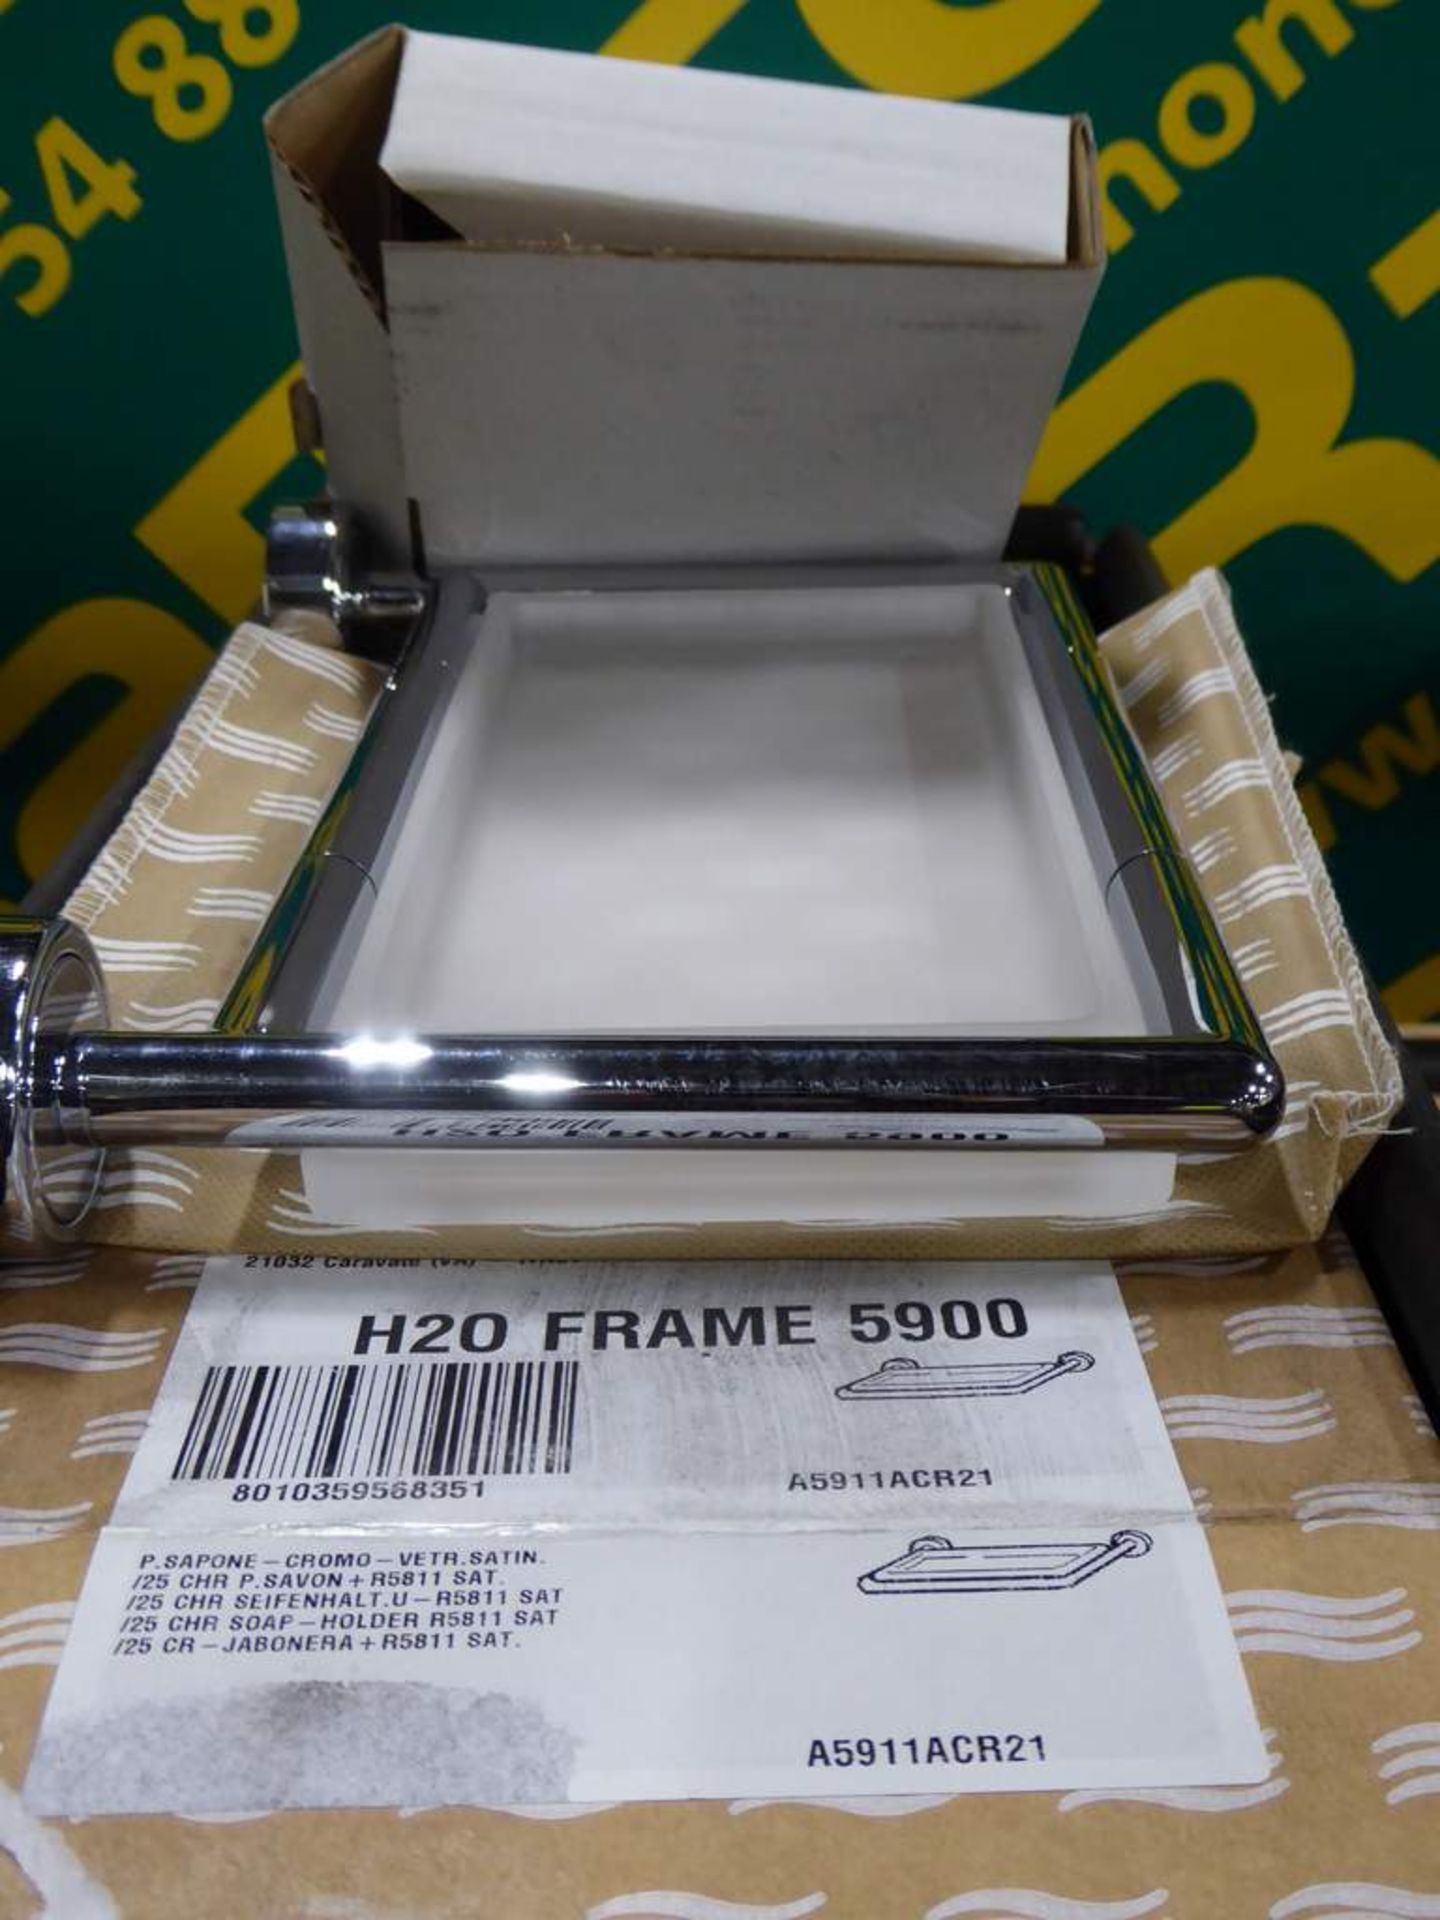 3x Inda soap holder - H20 Frame 5900 - Image 2 of 2